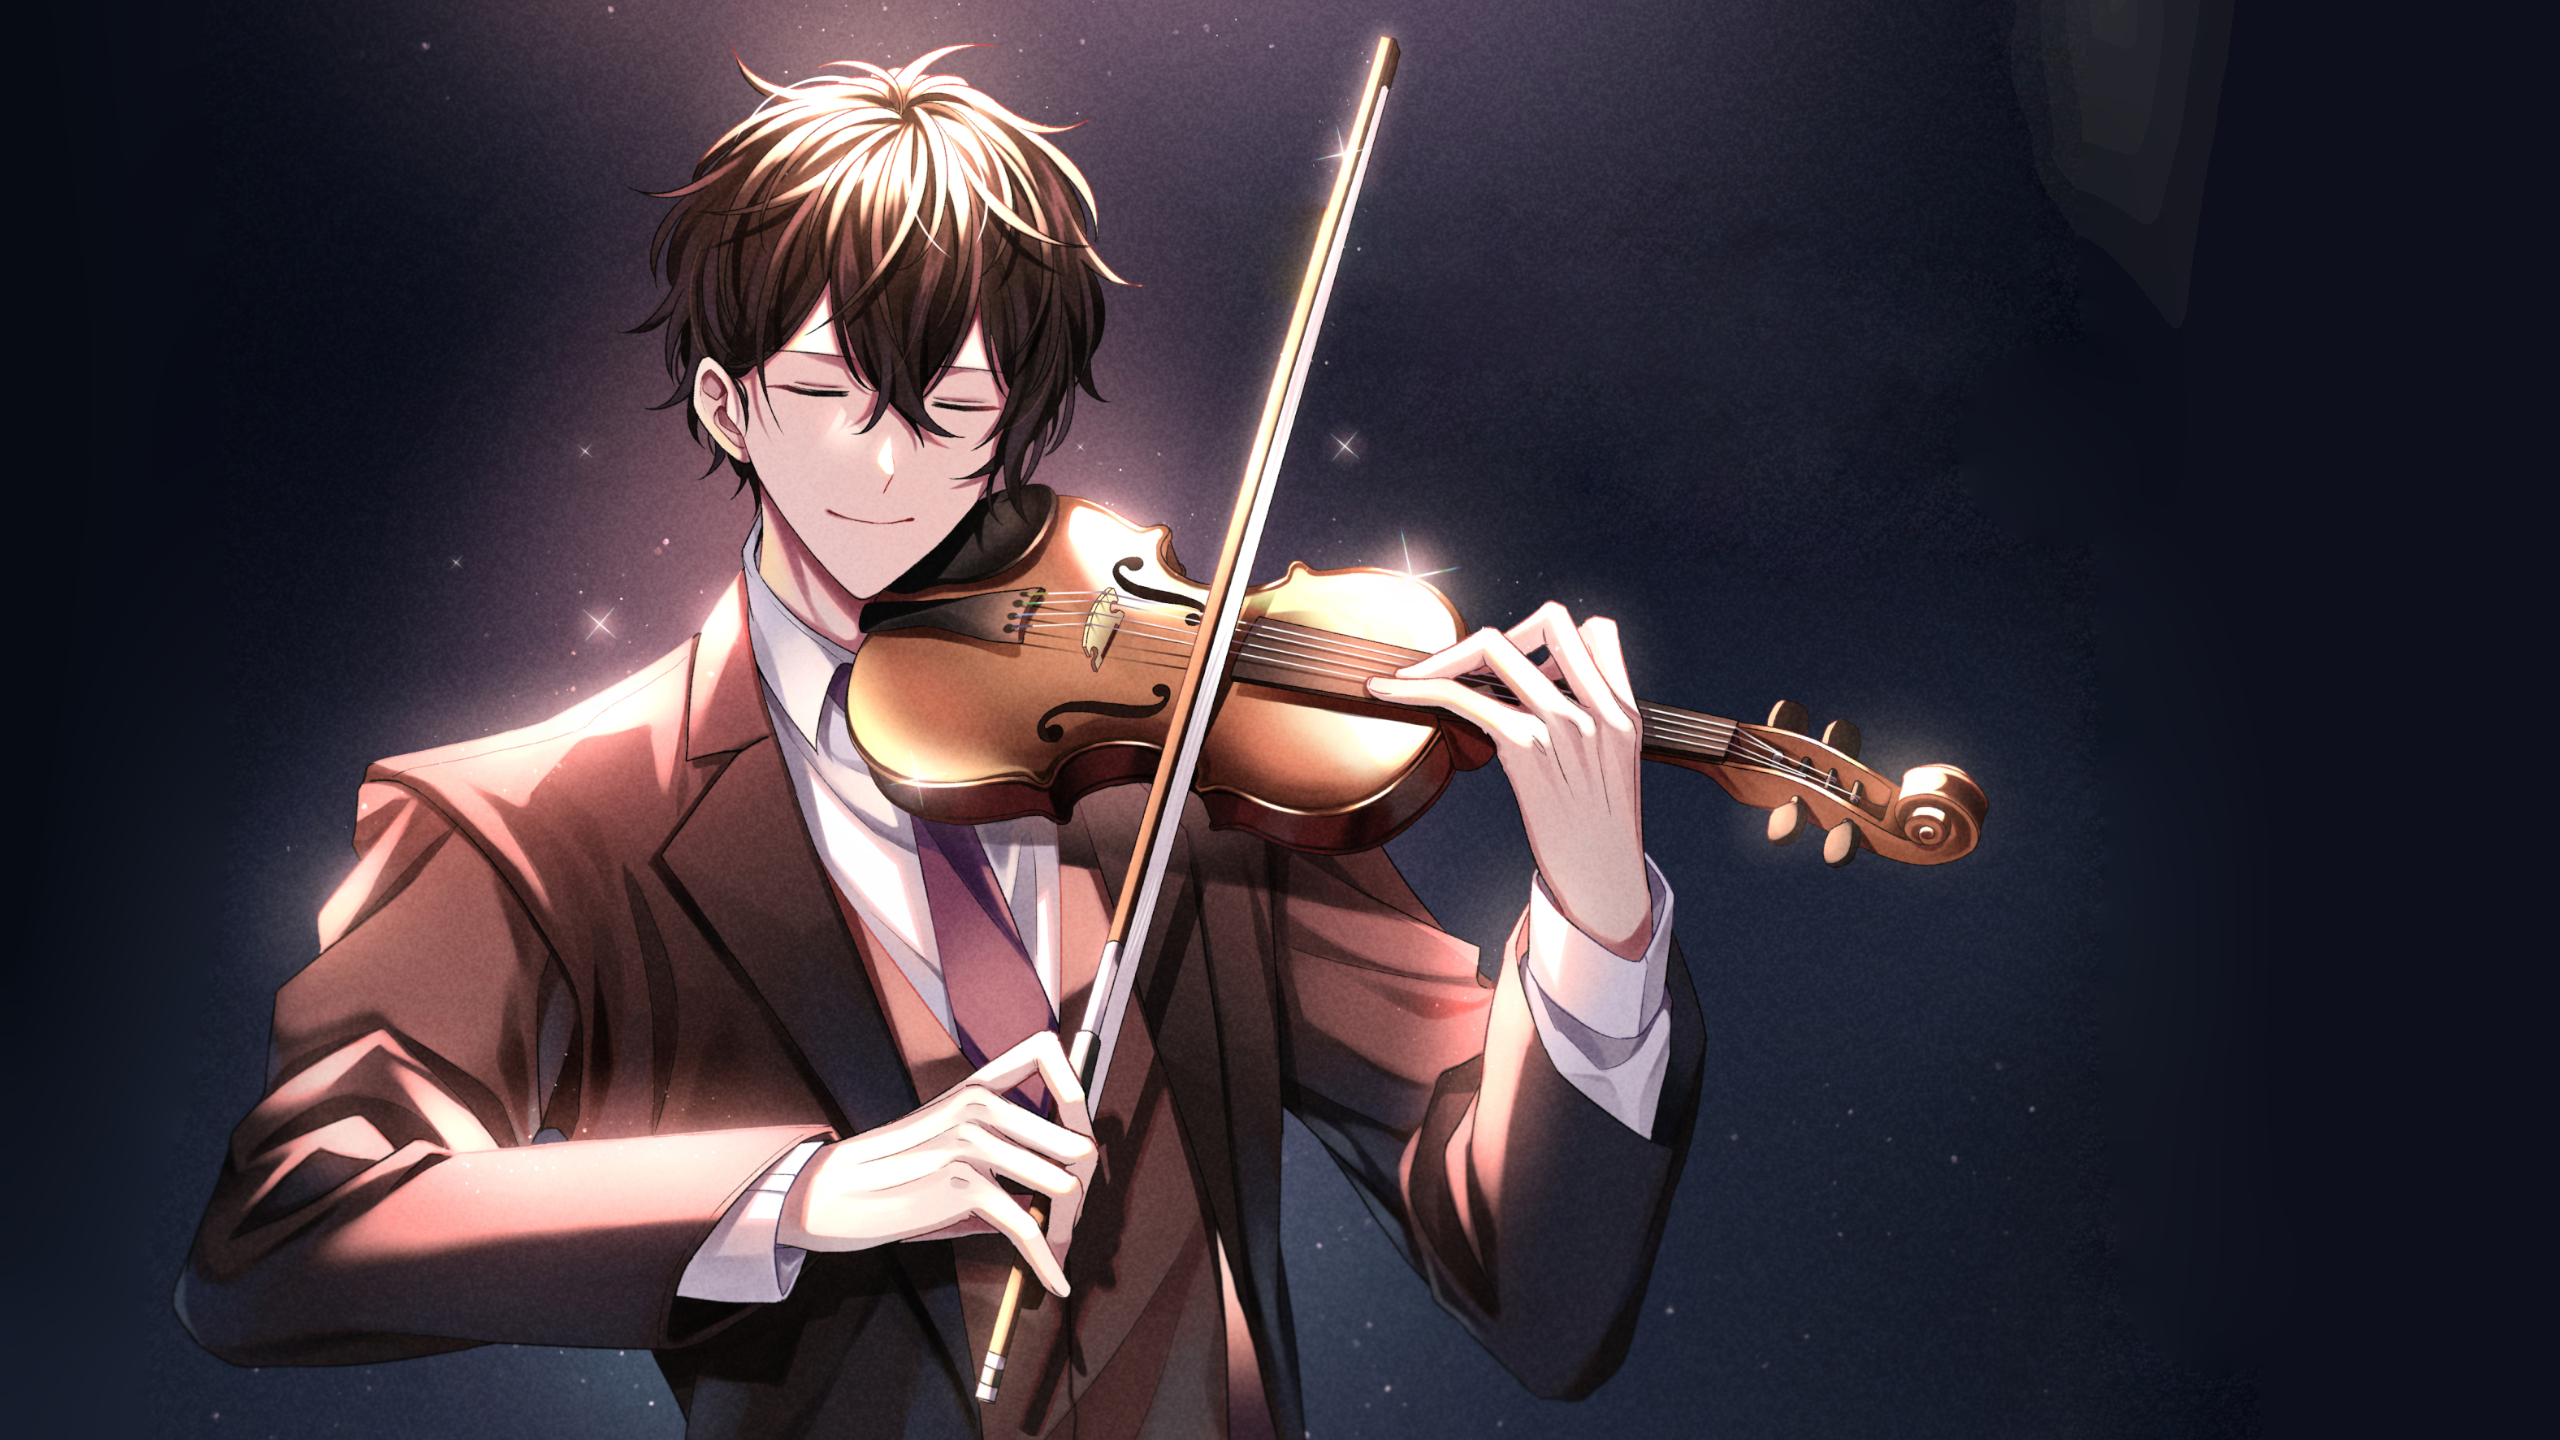 Murata Ugetsu Given Violin Anime Boys Smiling 2560x1440